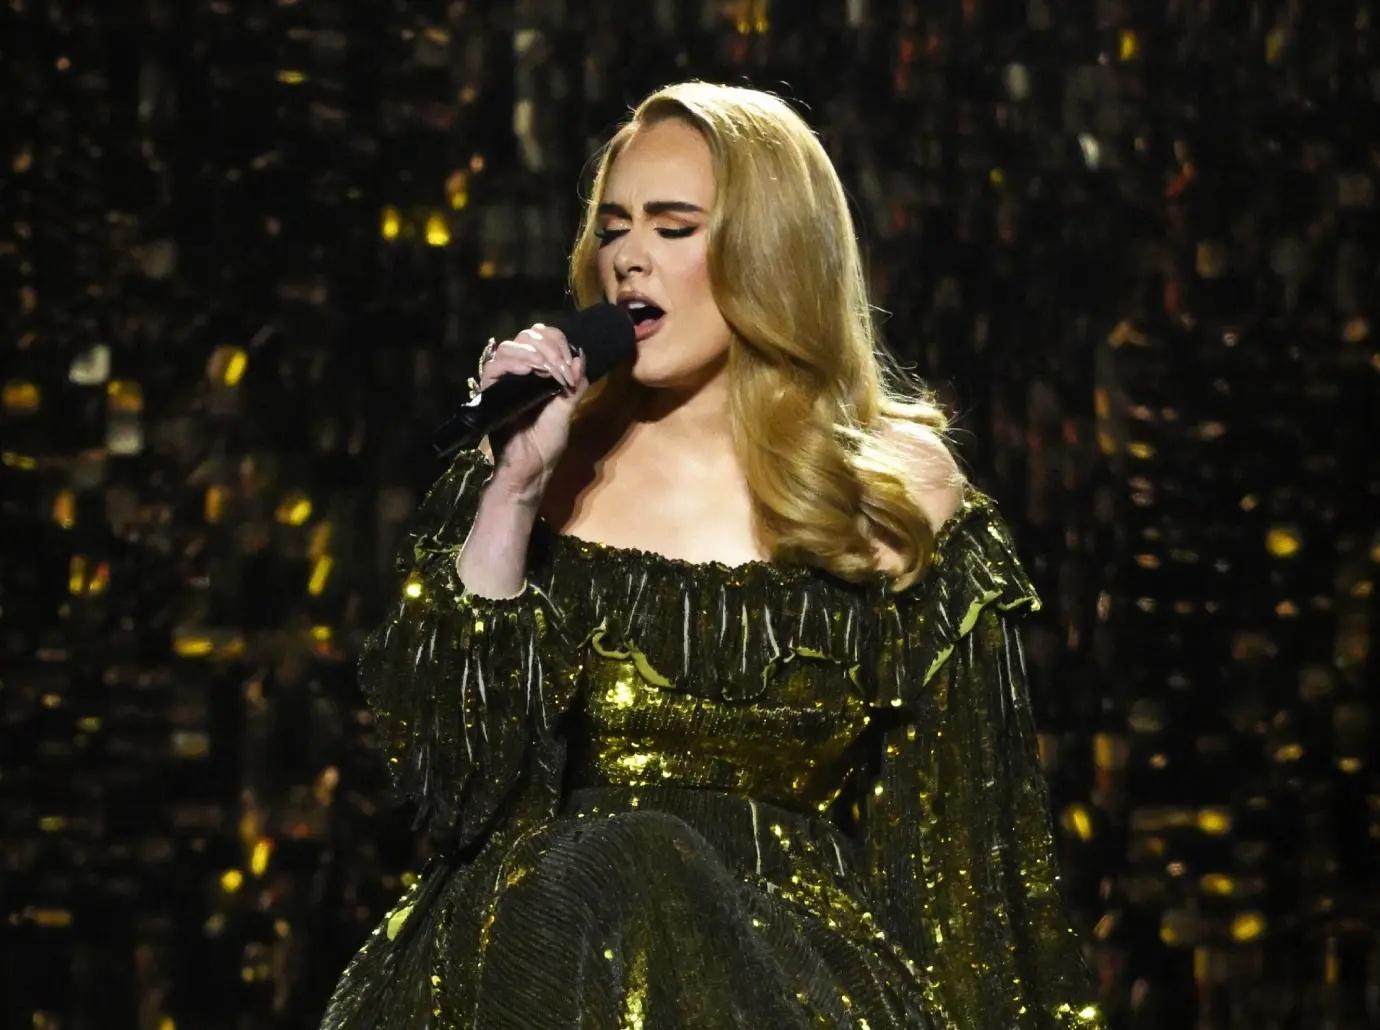 Adele dumps creative team behind Las Vegas residency